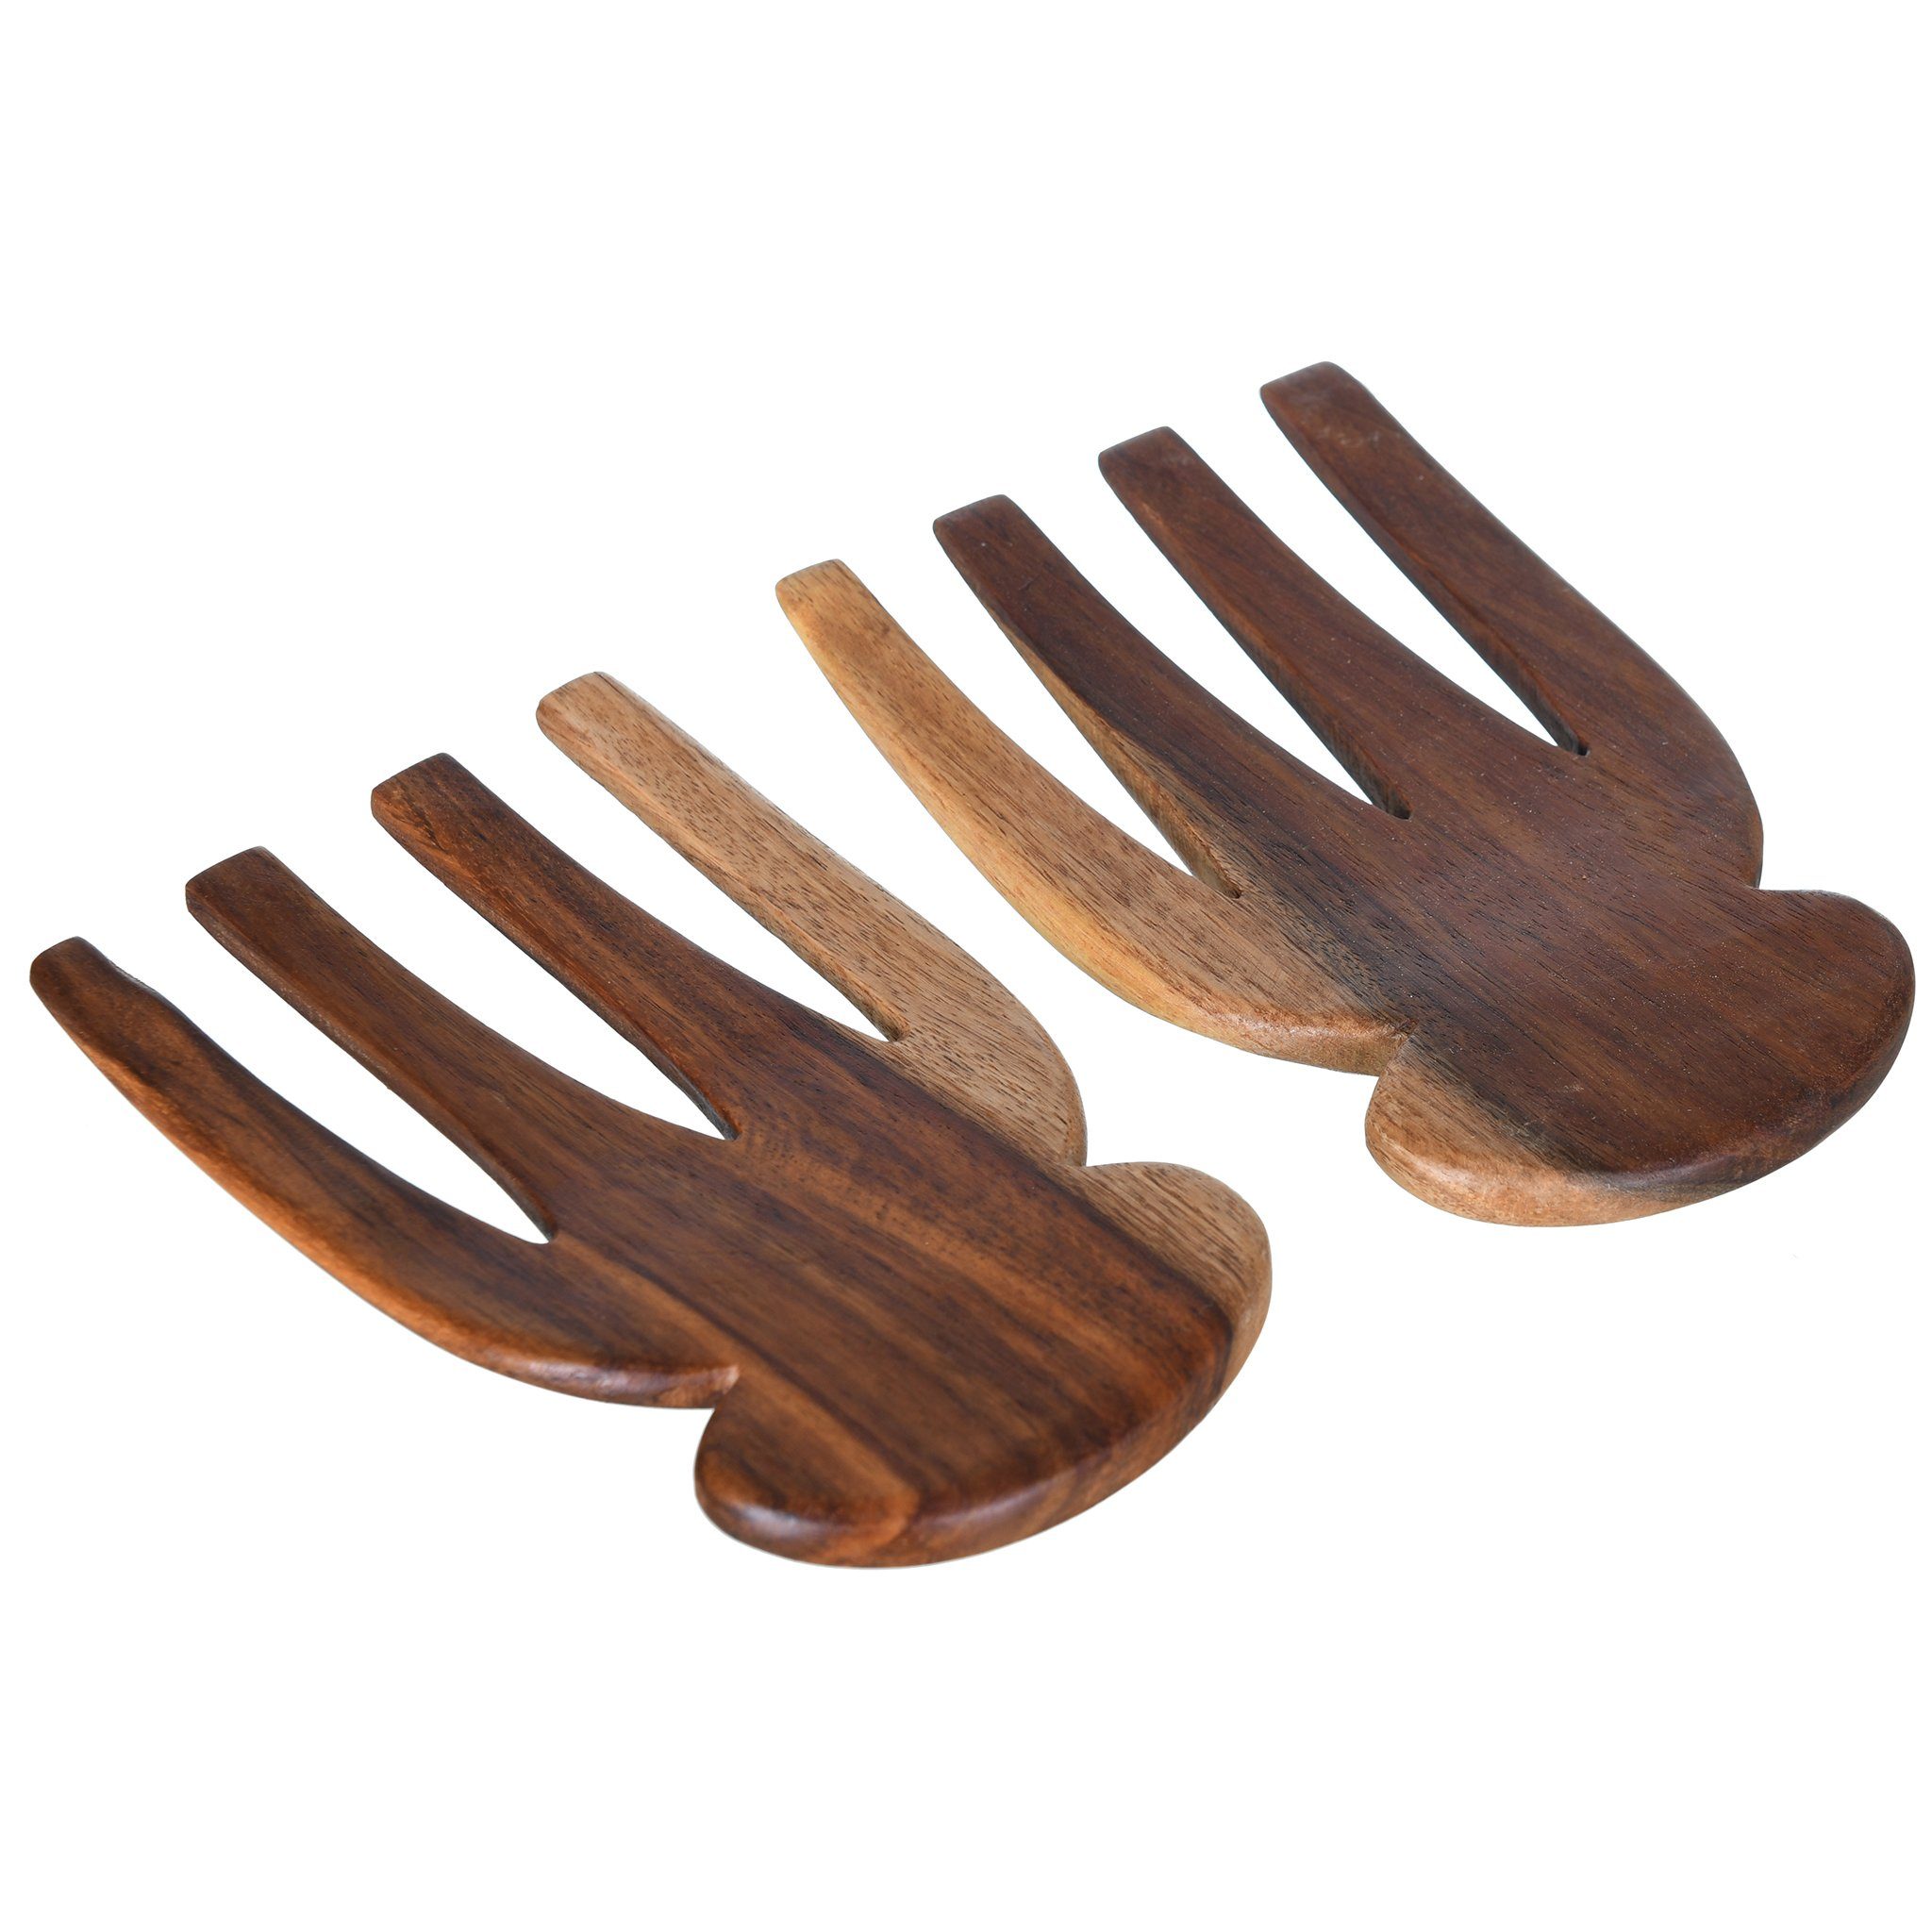 Wooden Salad Forks Set 2 Pieces - 16.5cm - 5900022